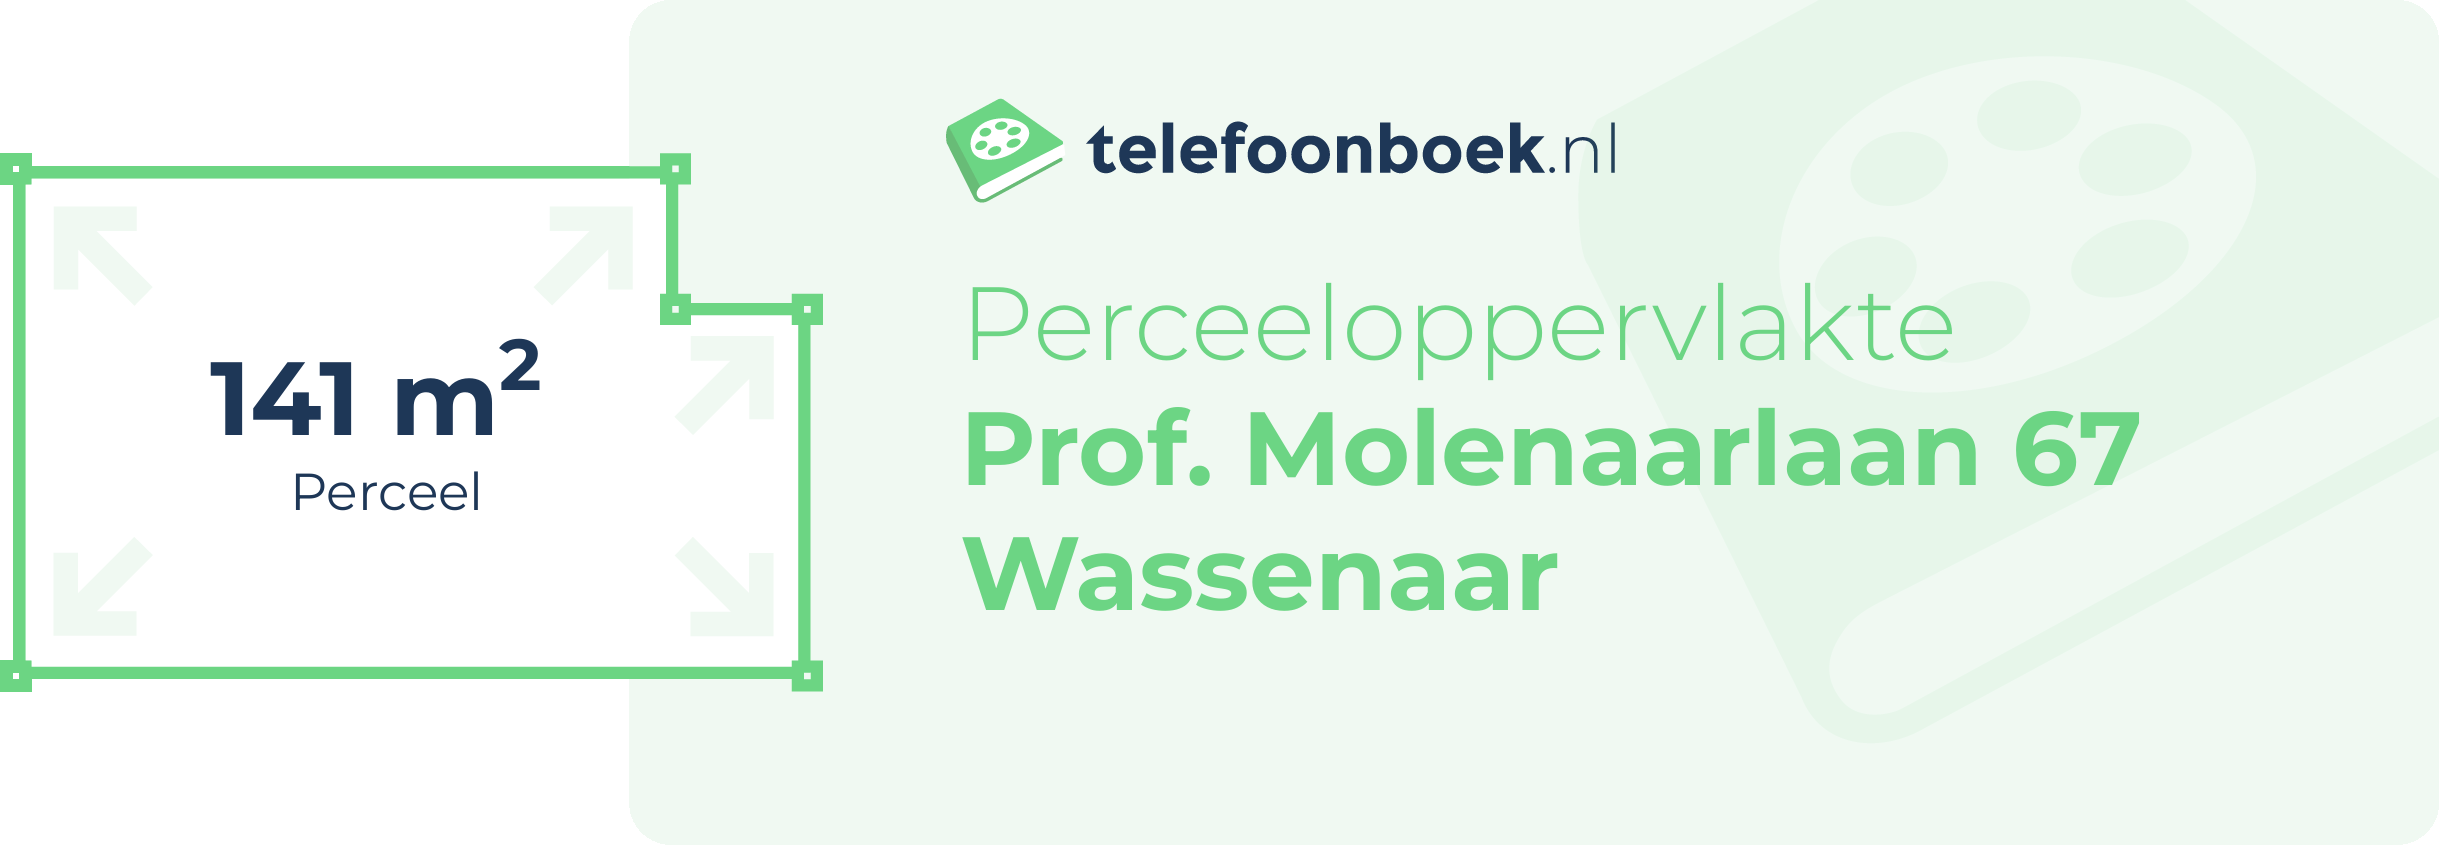 Perceeloppervlakte Prof. Molenaarlaan 67 Wassenaar